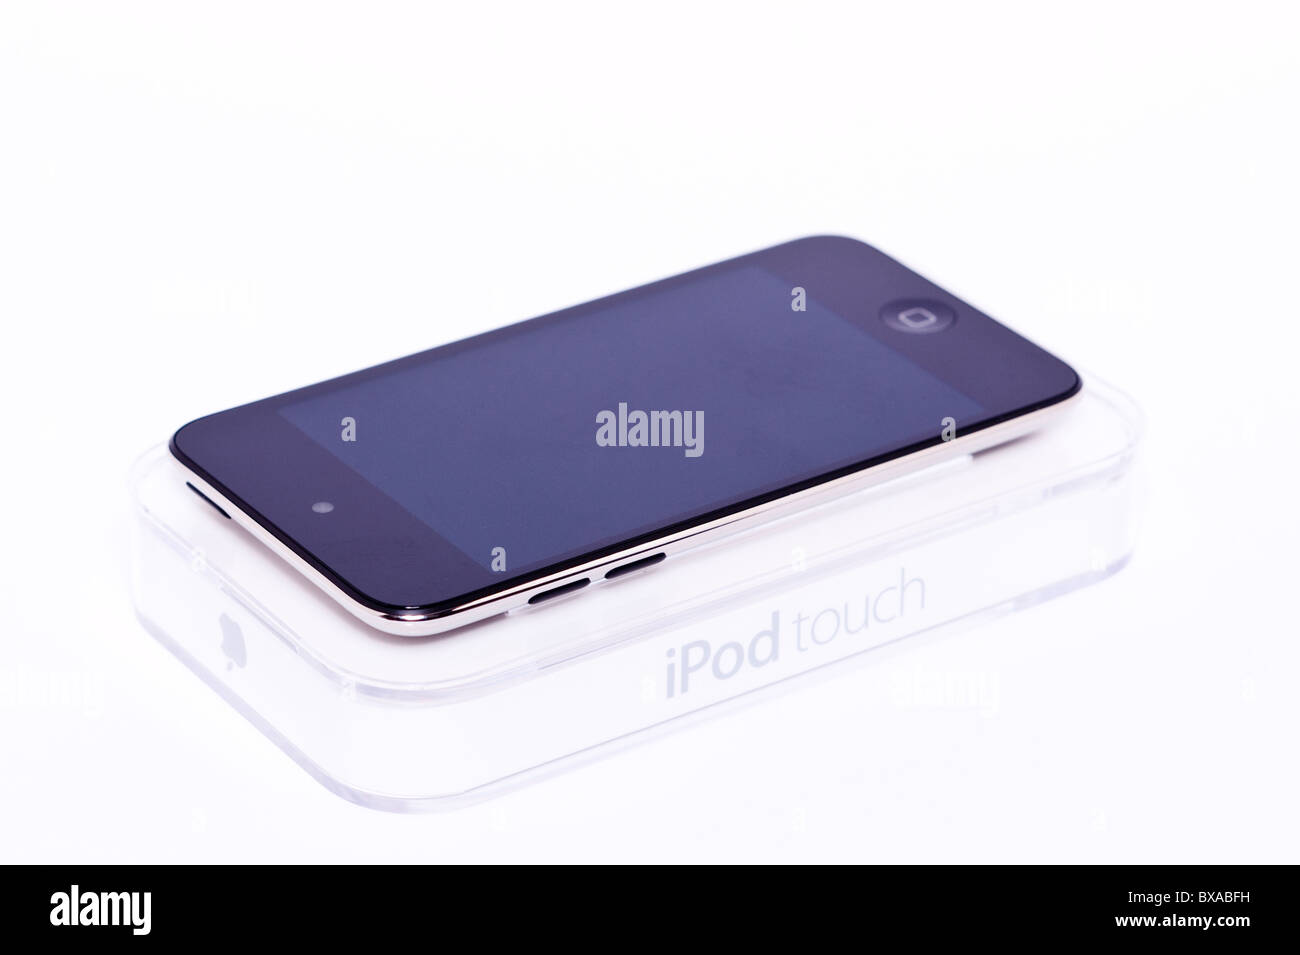 Der neue Apple Ipod touch 4. Generation 4G 32gb Mediaplayer auf einem weißen Hintergrund Stockfoto